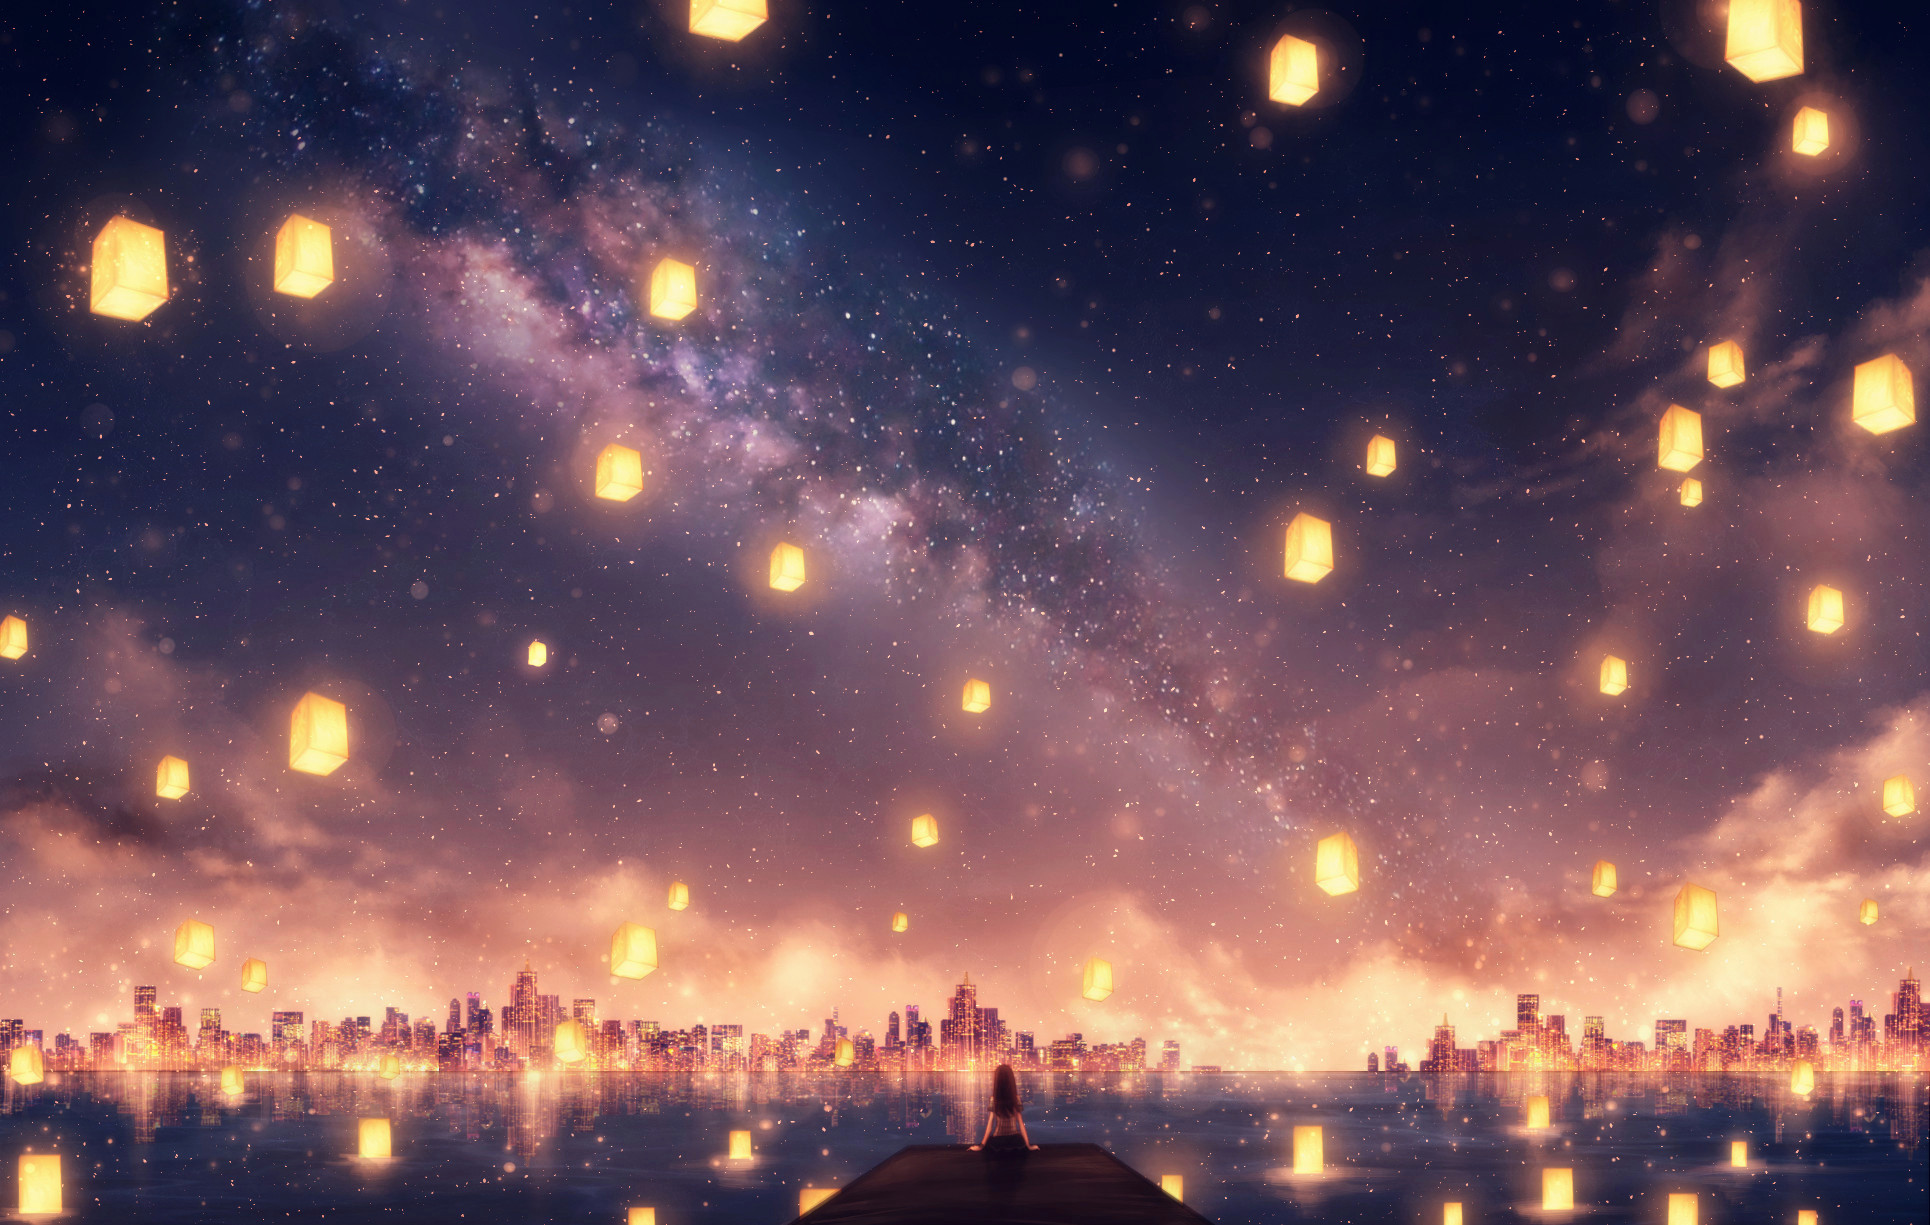 Anime Sky Art by CZY